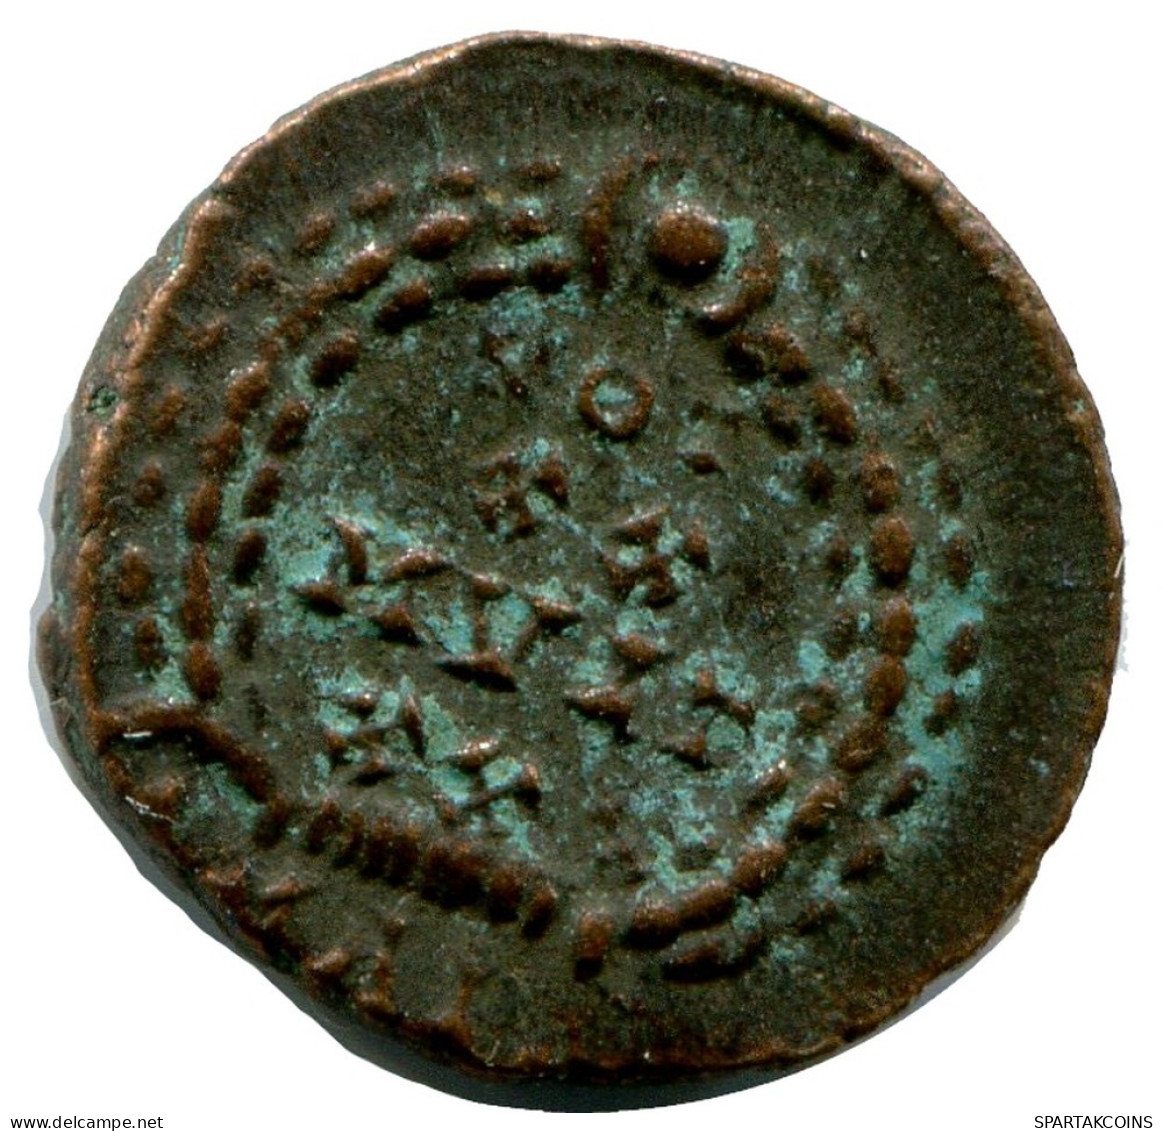 CONSTANTIUS II MINTED IN ALEKSANDRIA FOUND IN IHNASYAH HOARD #ANC10249.14.E.A - El Impero Christiano (307 / 363)